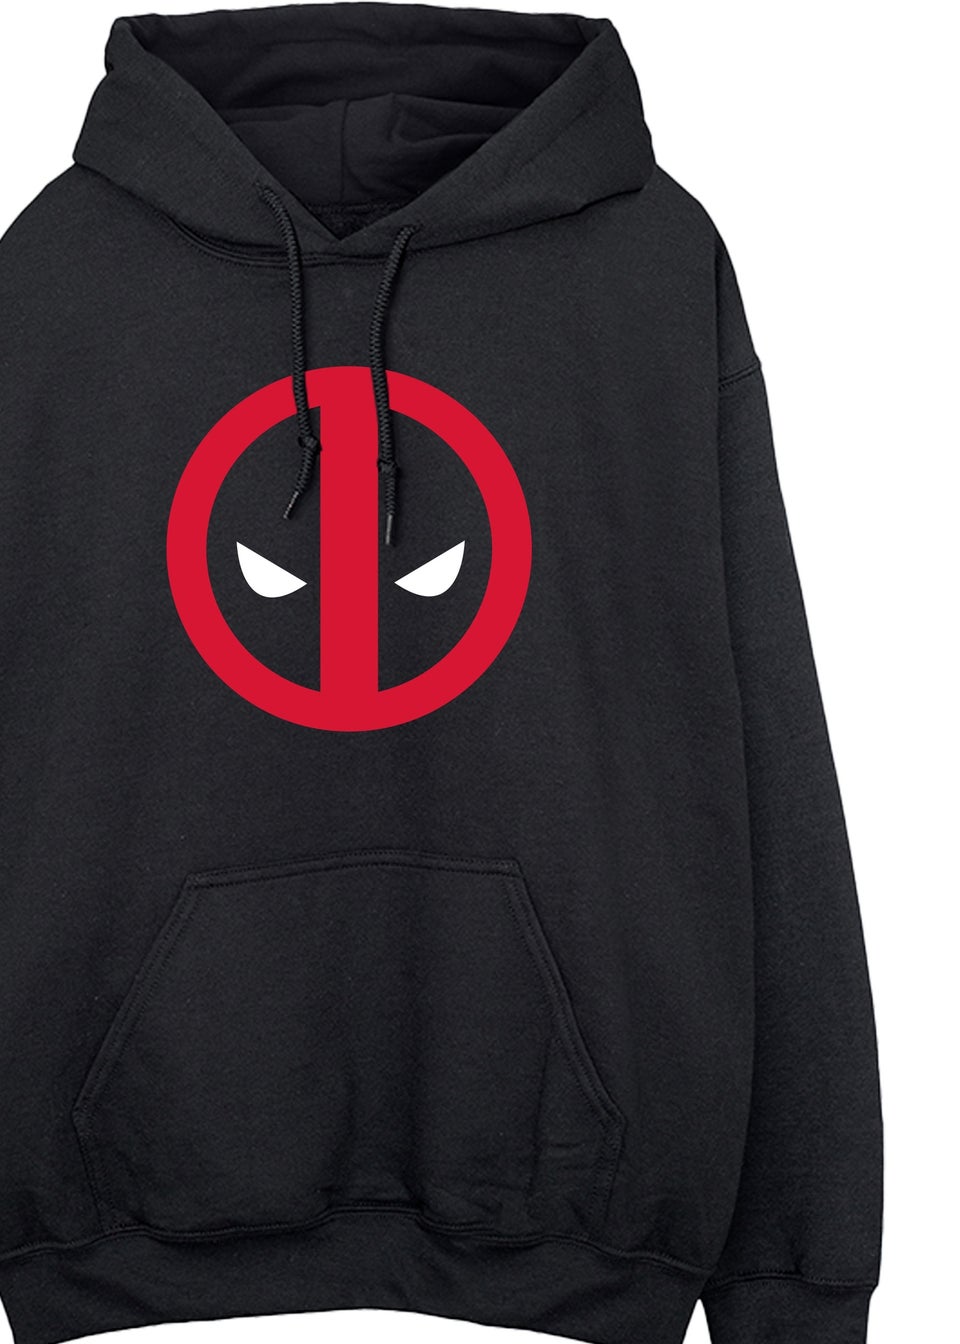 Marvel Deadpool Logo Black Printed Hoodie